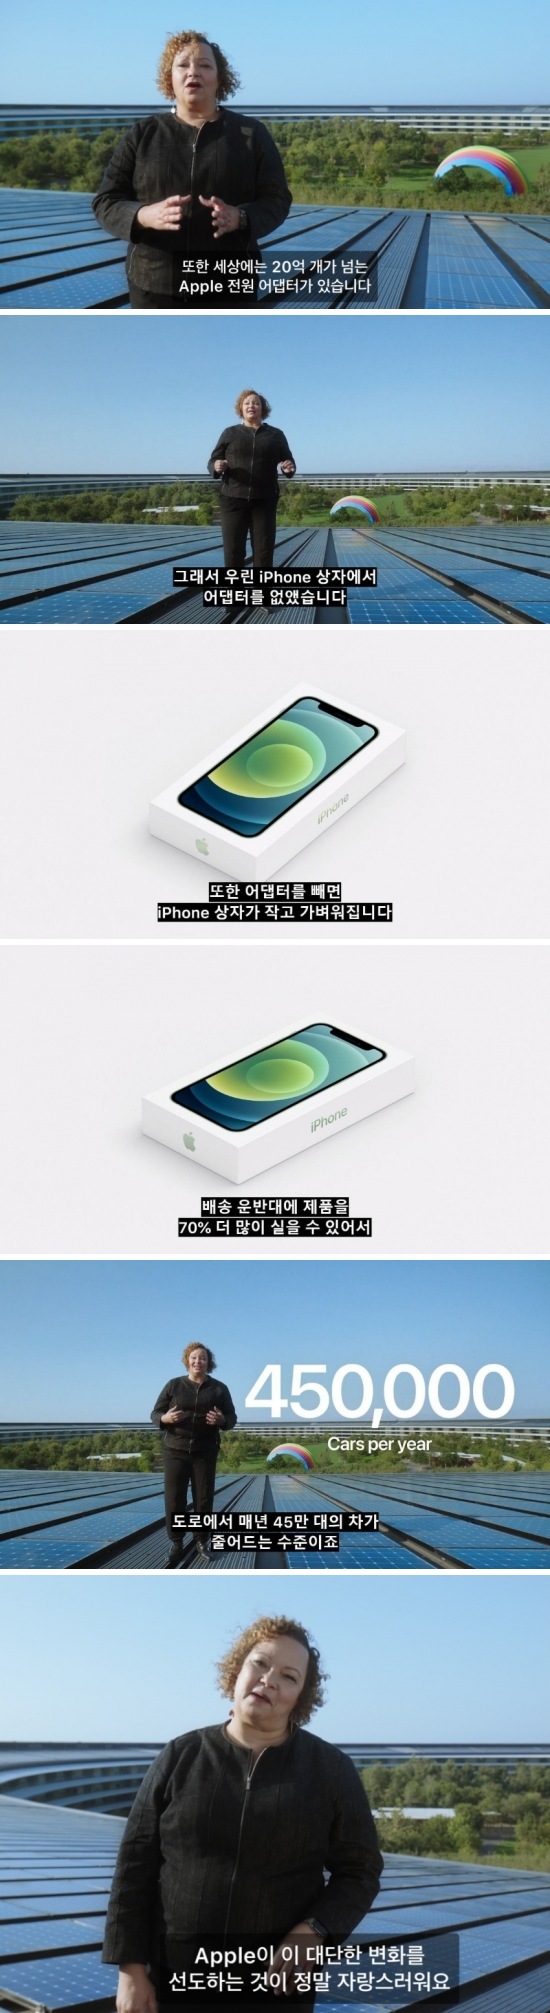 아이폰이 전원 어댑터를 뺀 숭고한 이유.jpg